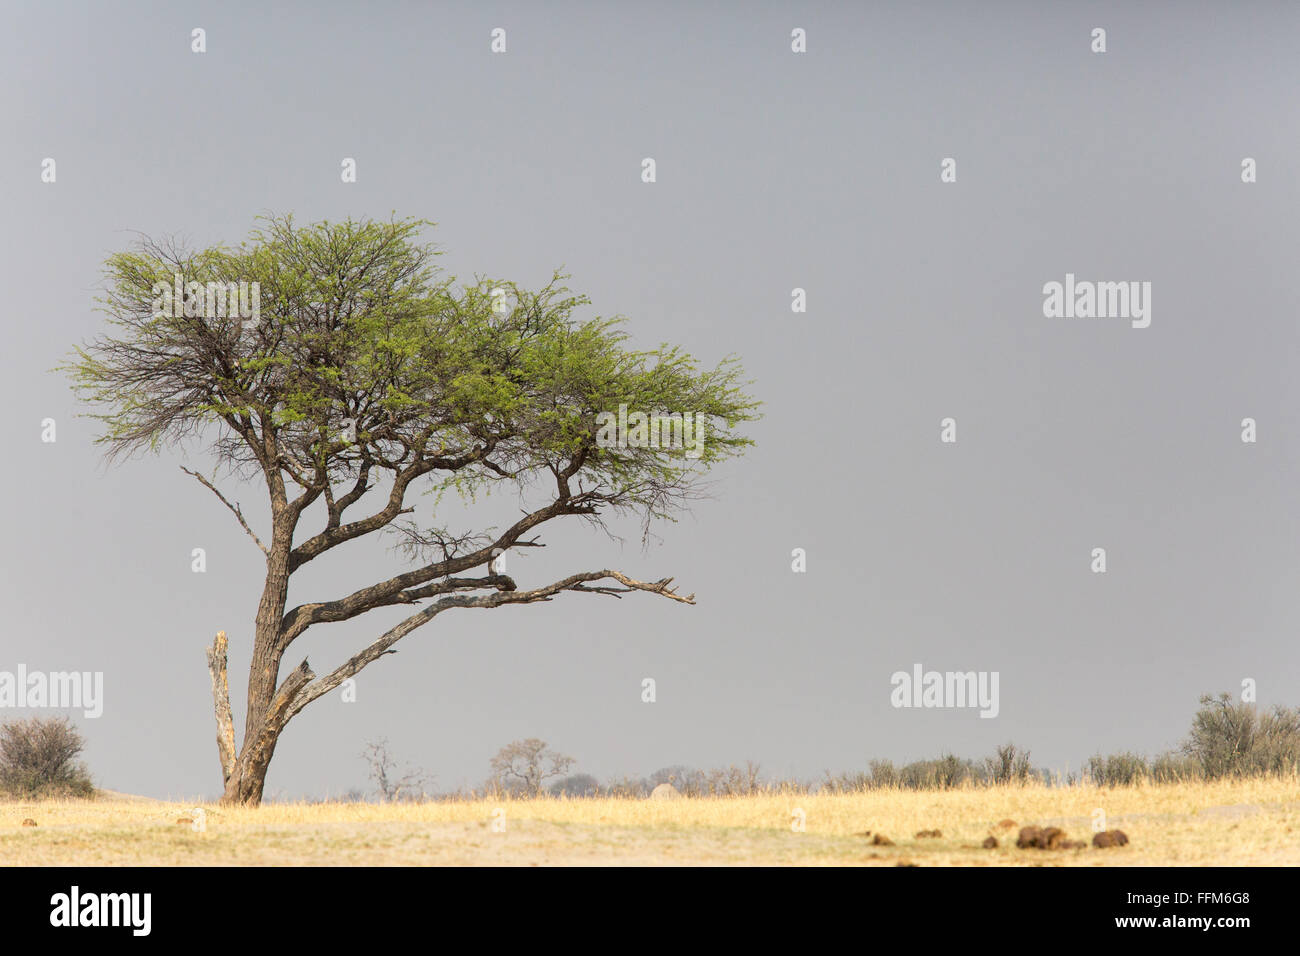 Paysage panoramique avec un arbre isolé à l'horizon Banque D'Images